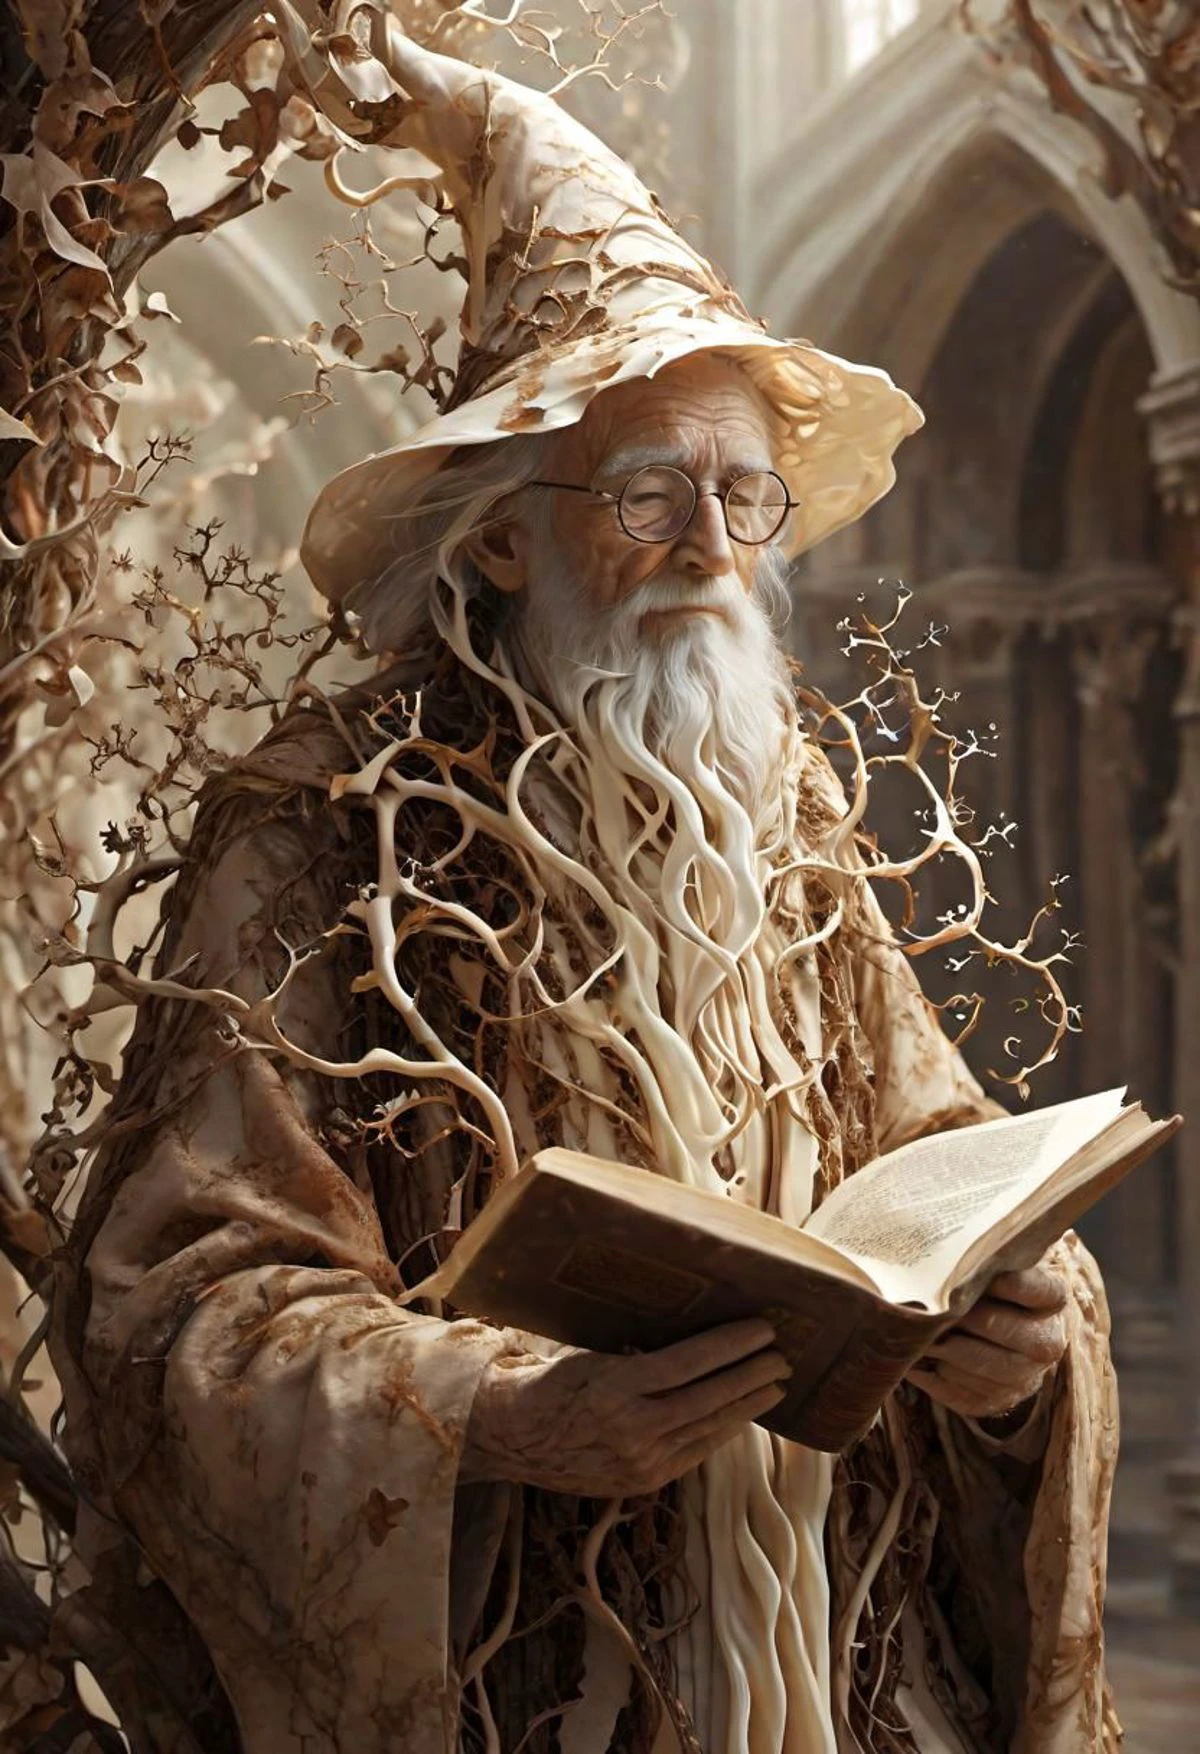 フラクタルヴァイン, クリーム色のフラクタルのつるに覆われた古い司書の魔法使い, 本を読んでいる, 図書館, ほこりっぽい,